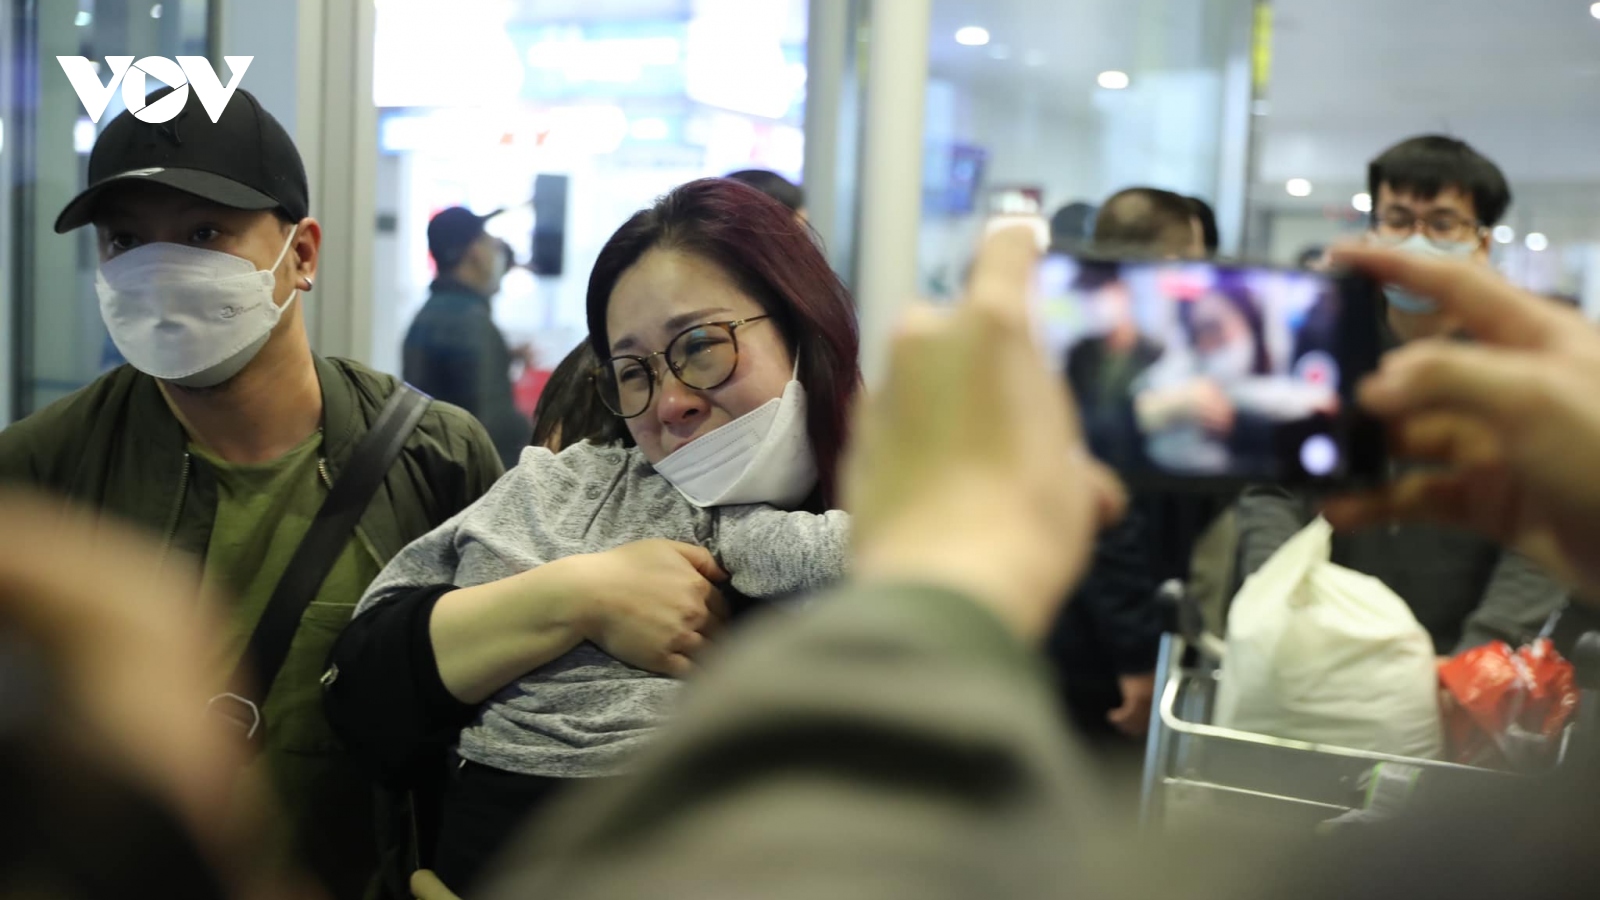 Hành trình gian nan chạy khỏi Ukraine và nước mắt ngày đoàn tụ tại sân bay Nội Bài